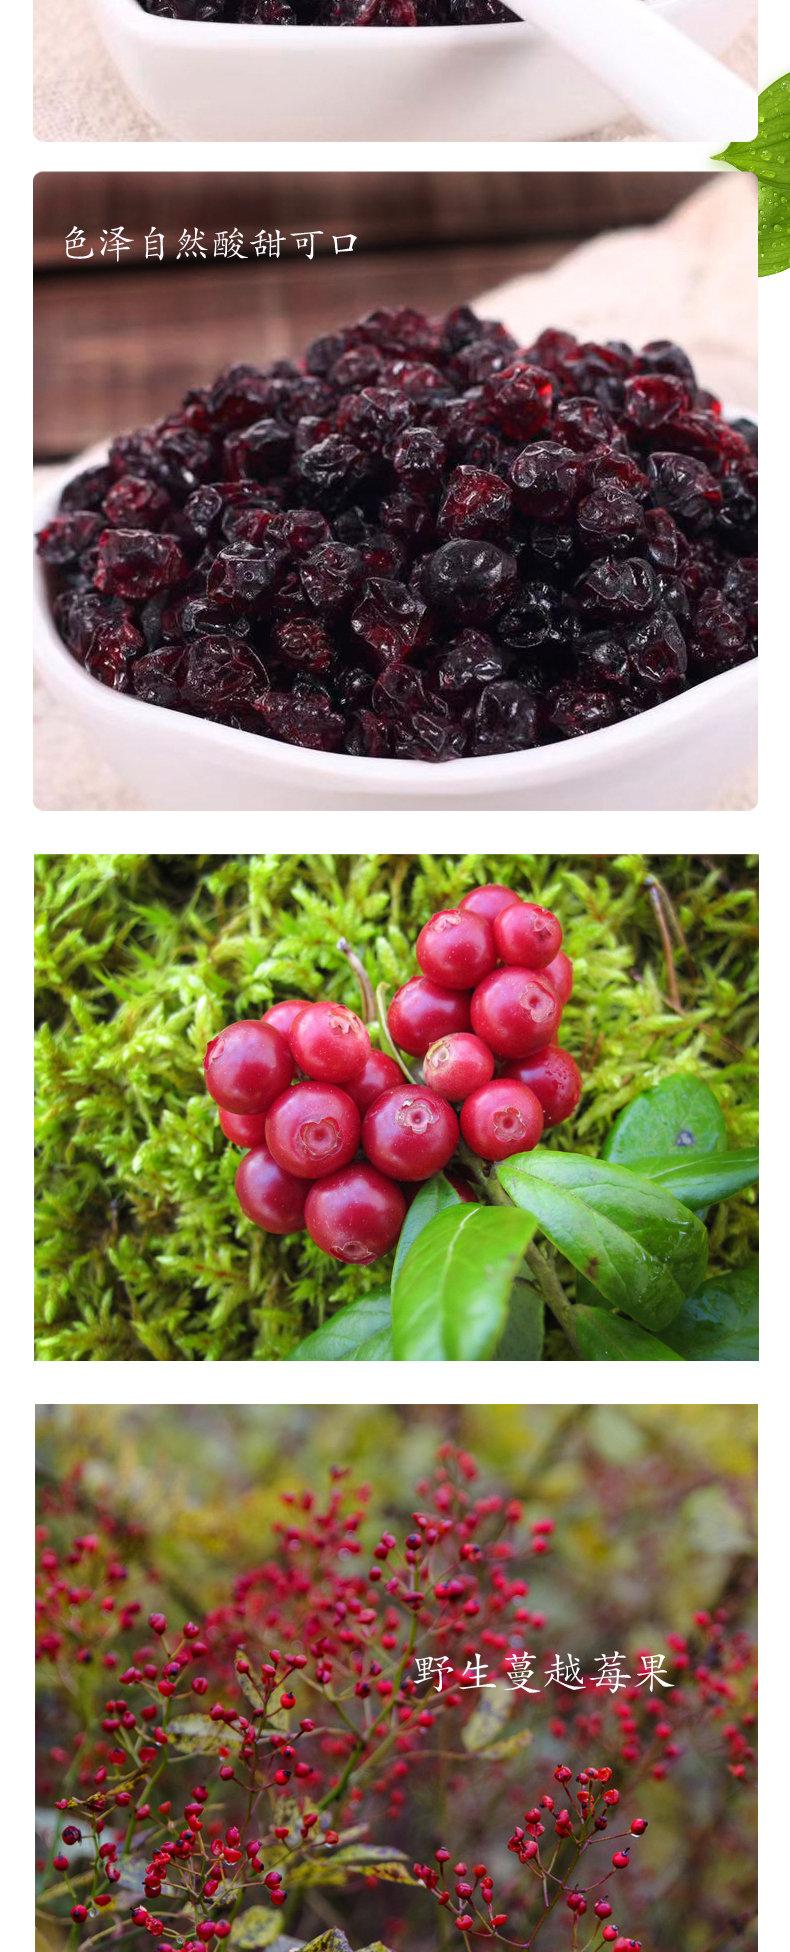 野生蔓越莓果干大兴安岭原味红豆干东北特产烘培原料零食500g